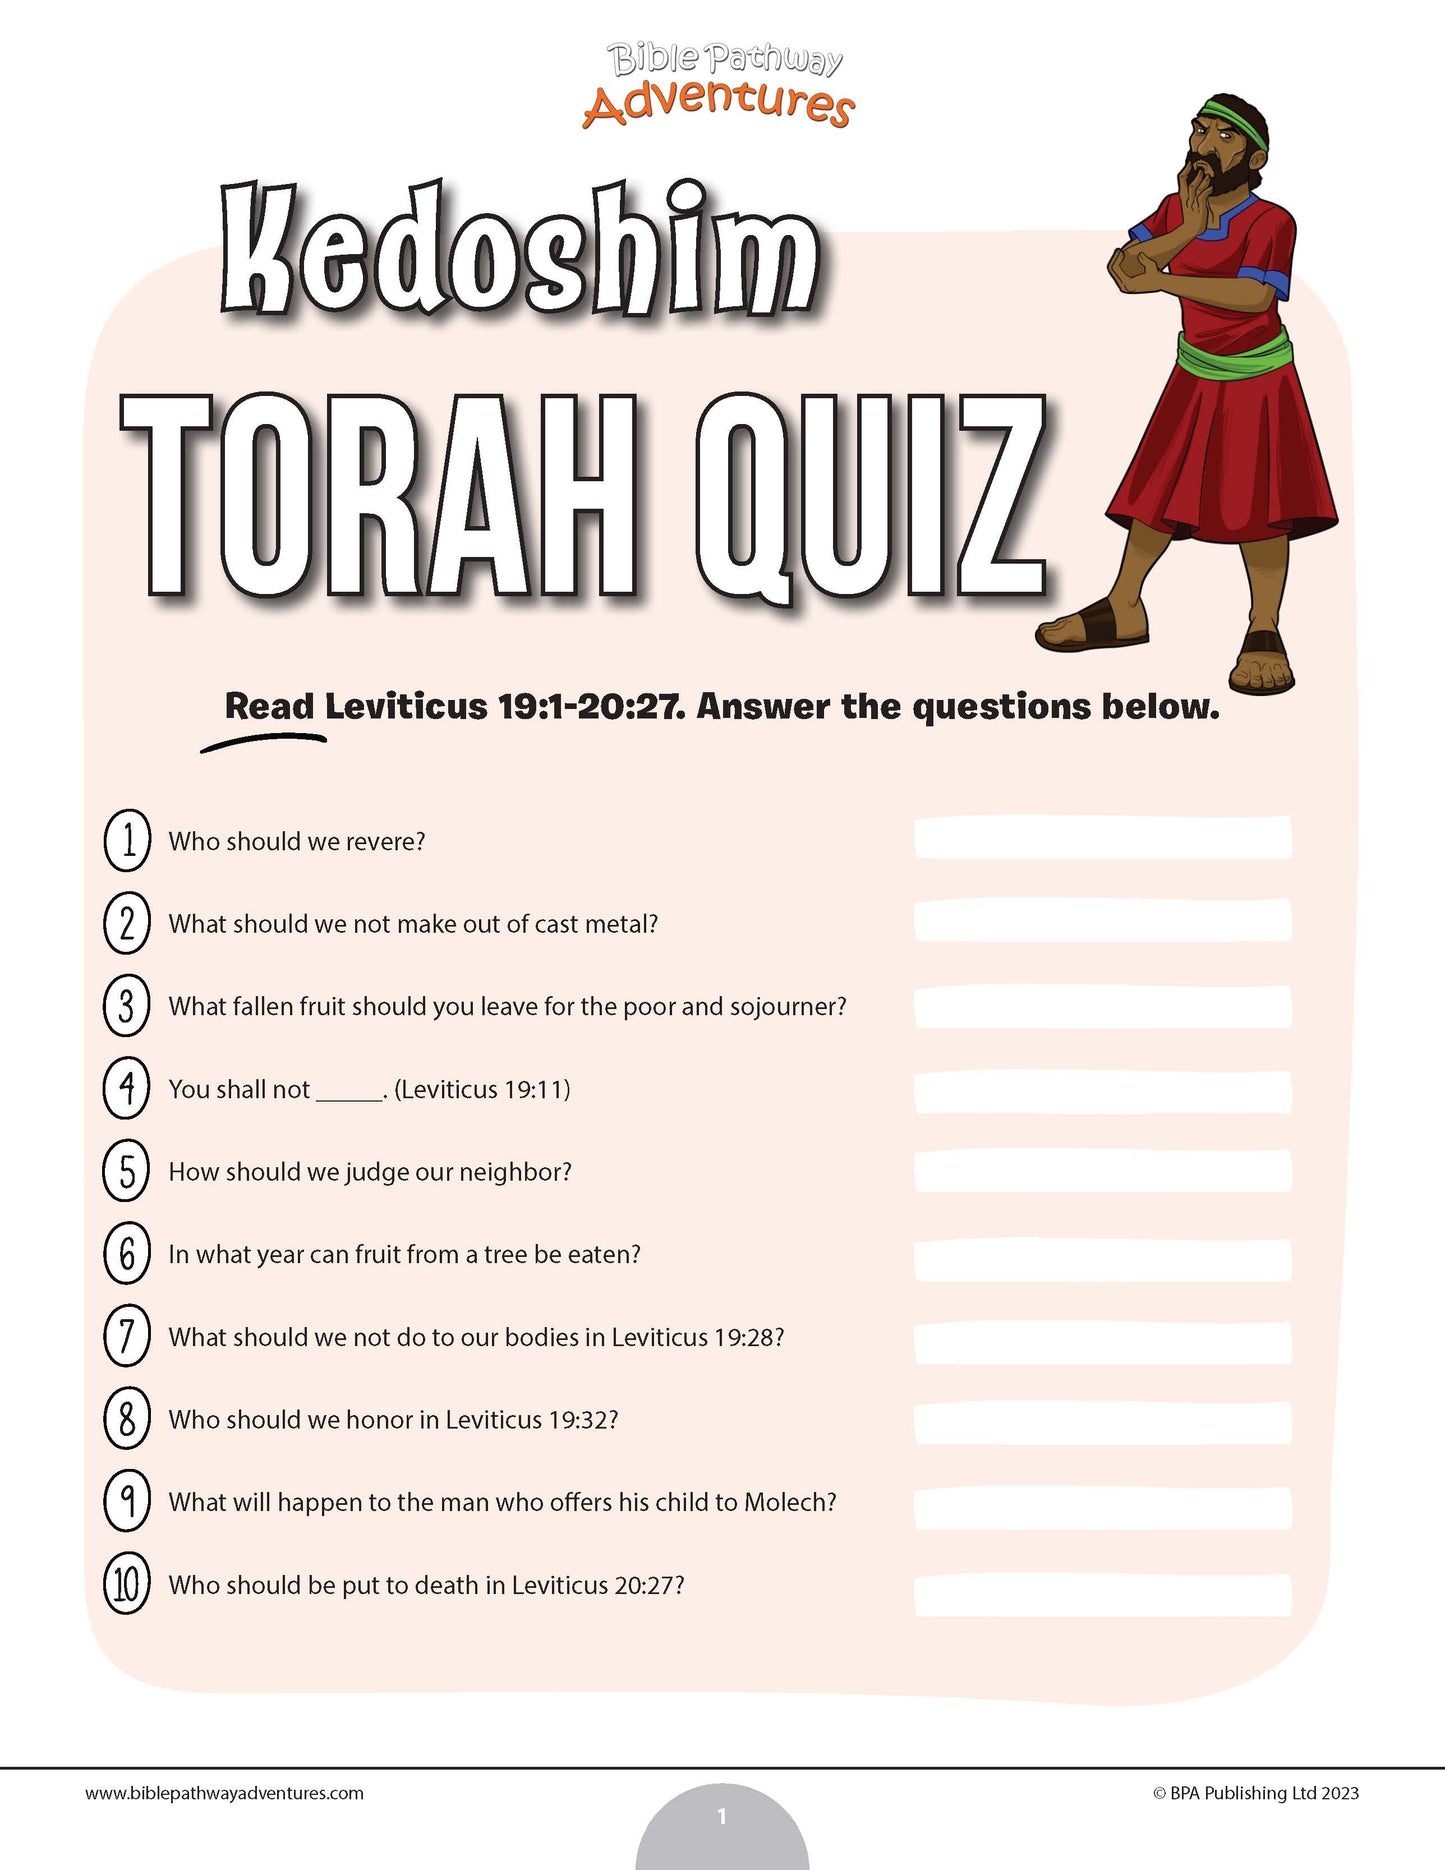 Kedoshim Torah quiz